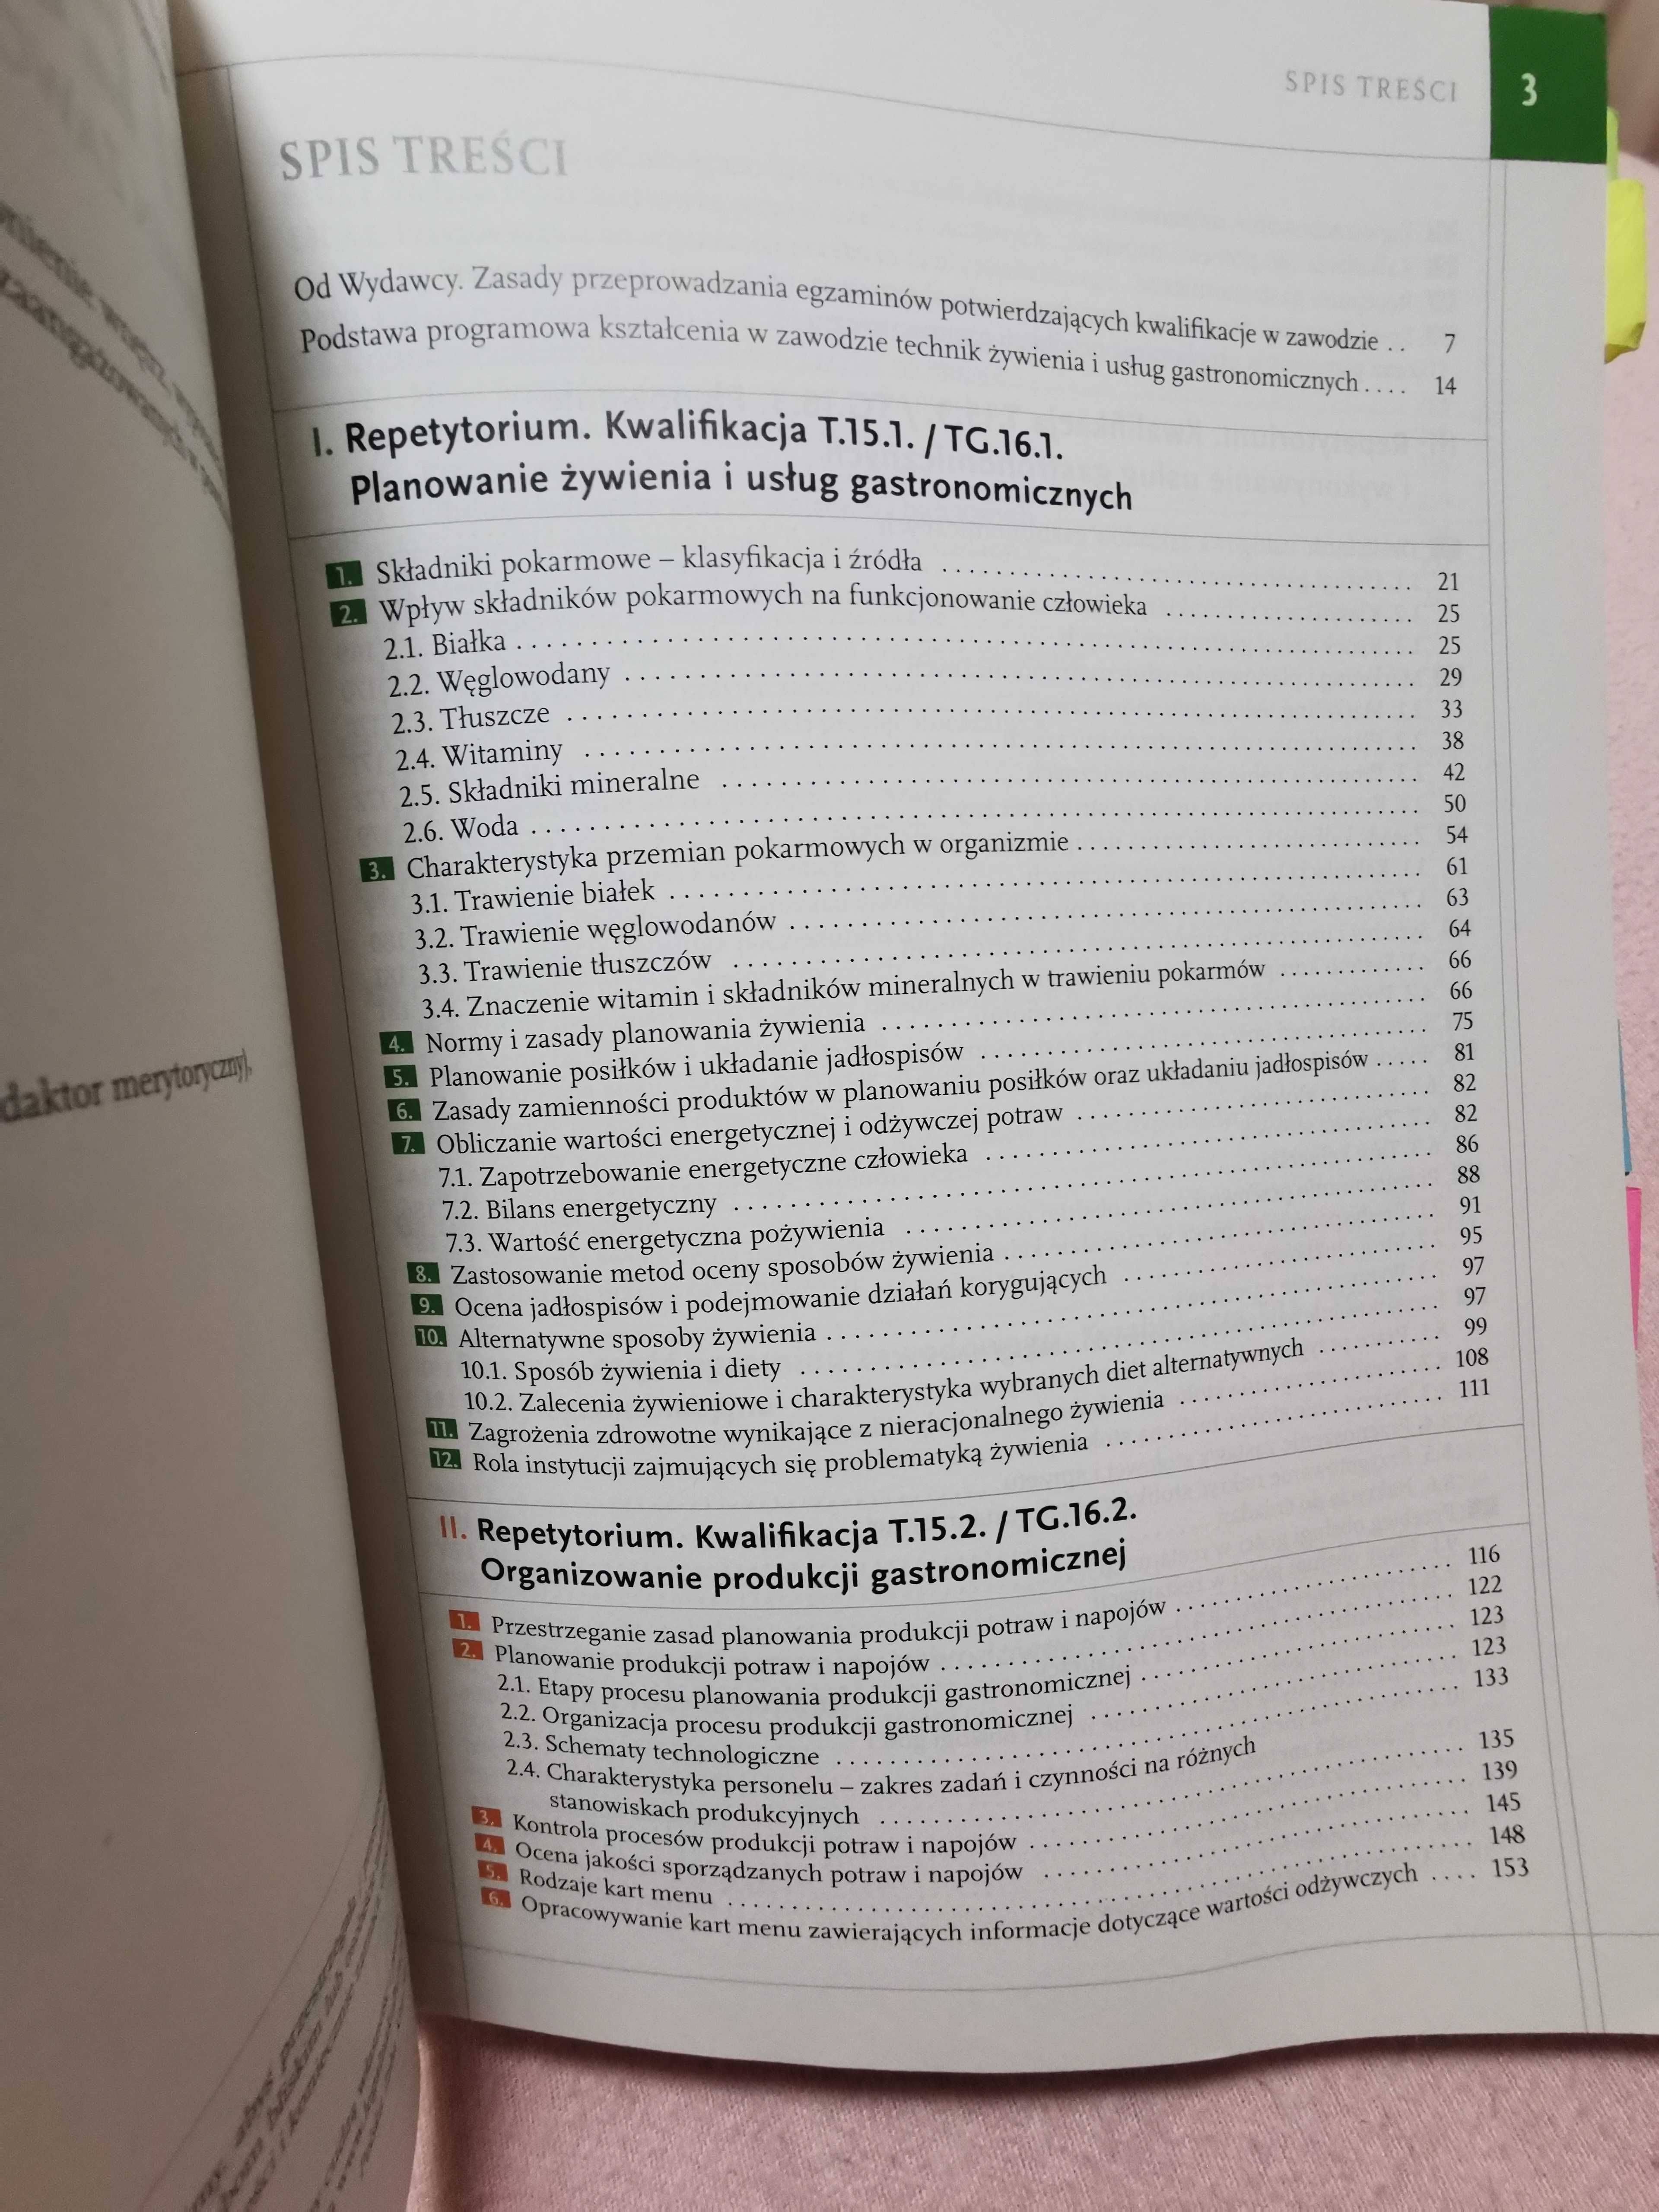 Repetytorium, Technik żywienia i usług gastronomicznych t.15/tg.16